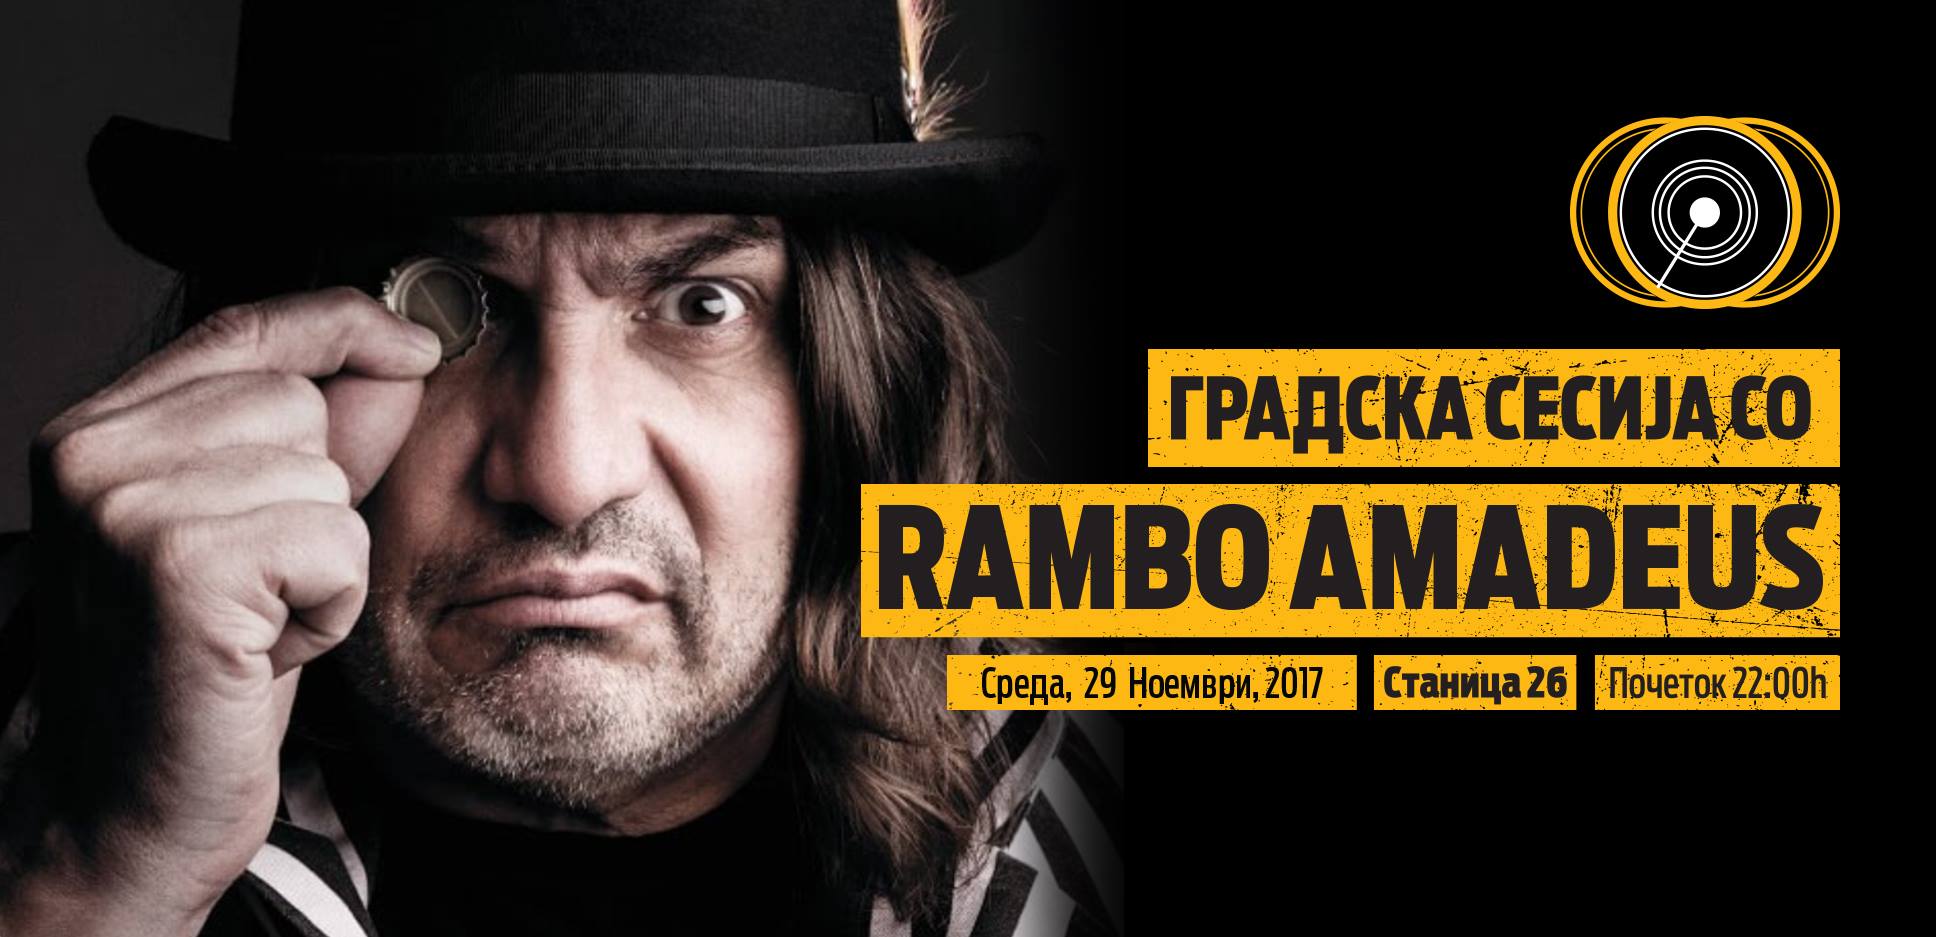 Rambo Amadeus 29.11.2017. Stanica 26